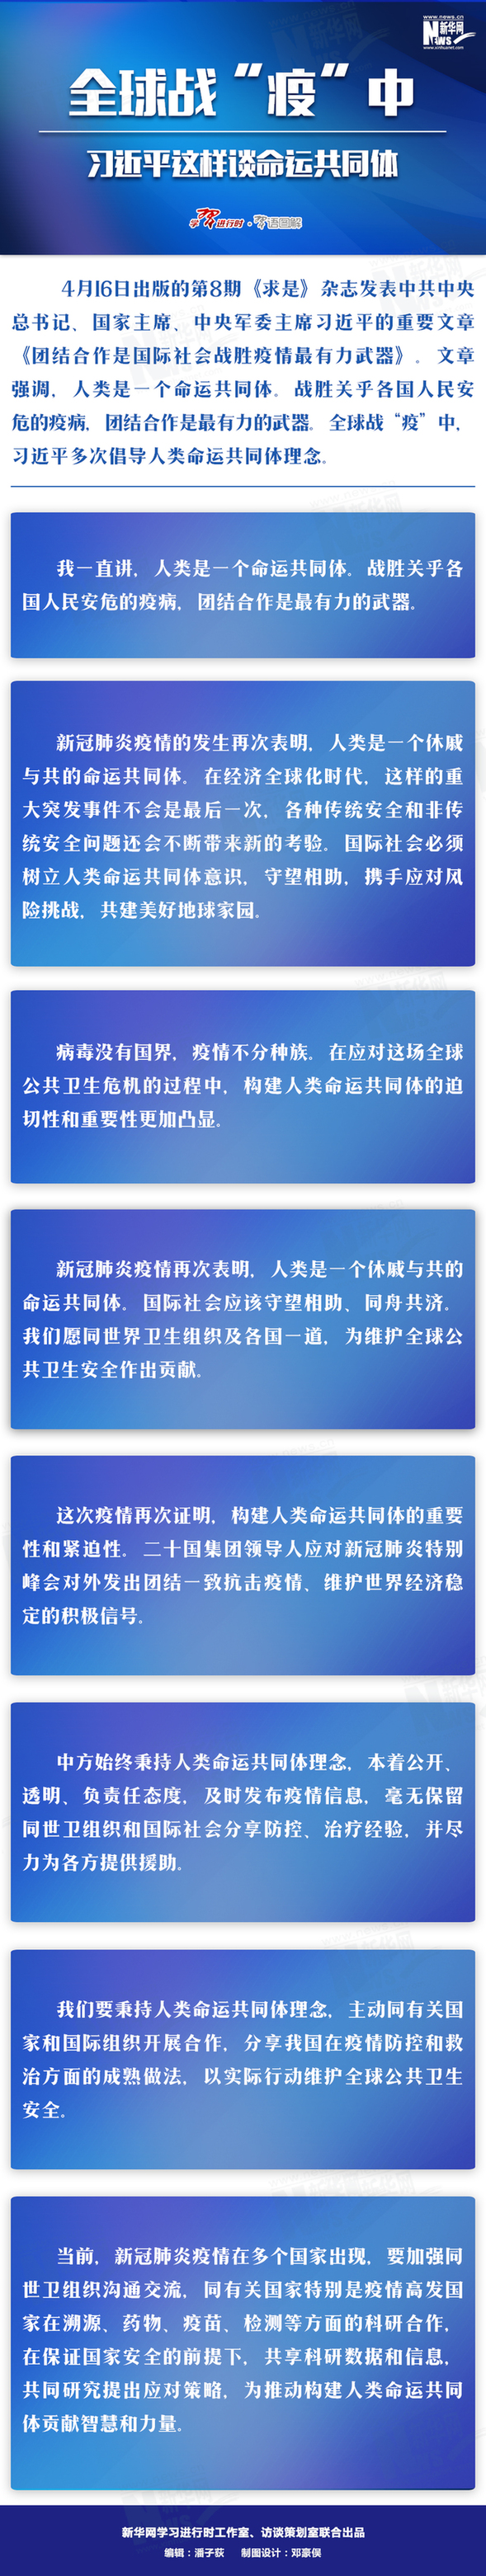 深圳市：病案18系统检测感柒“奥密克戎”，为新的单独肺炎疫情